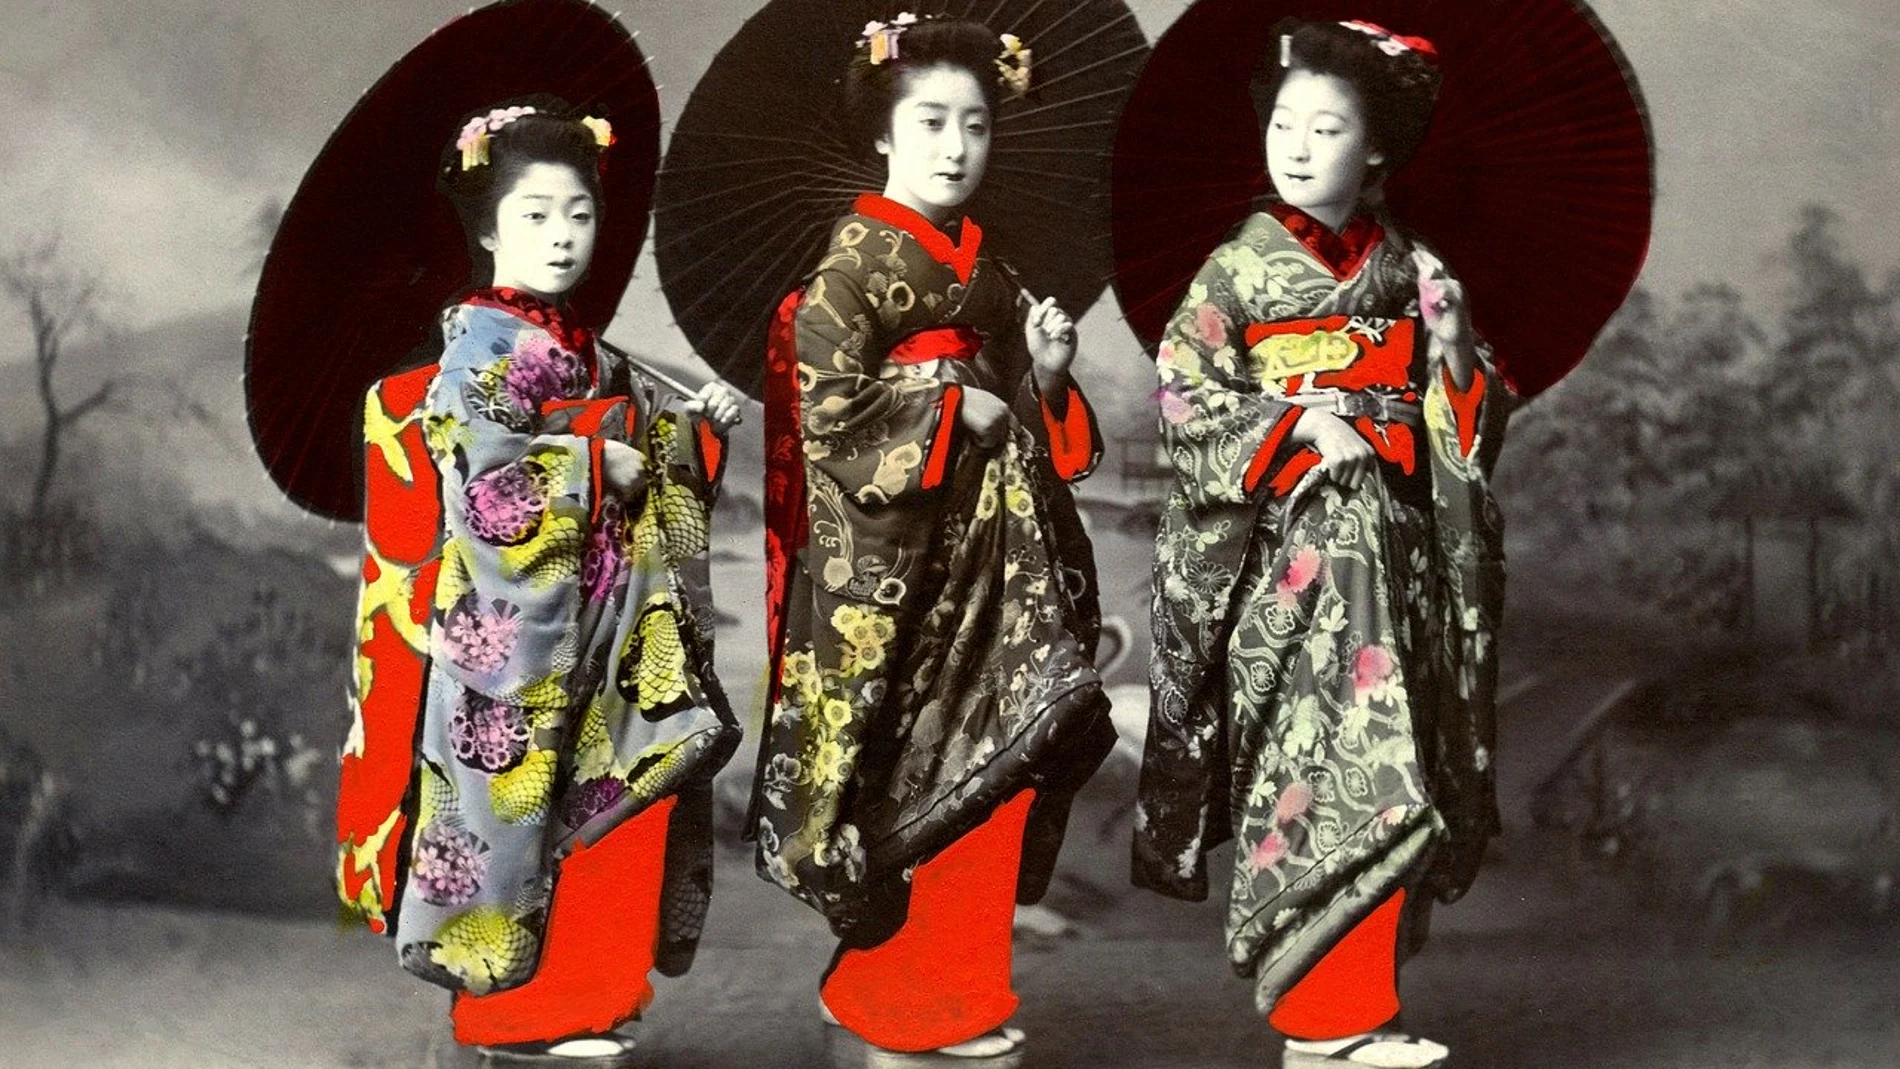 Geishas tradicionales posan para una fotografía.